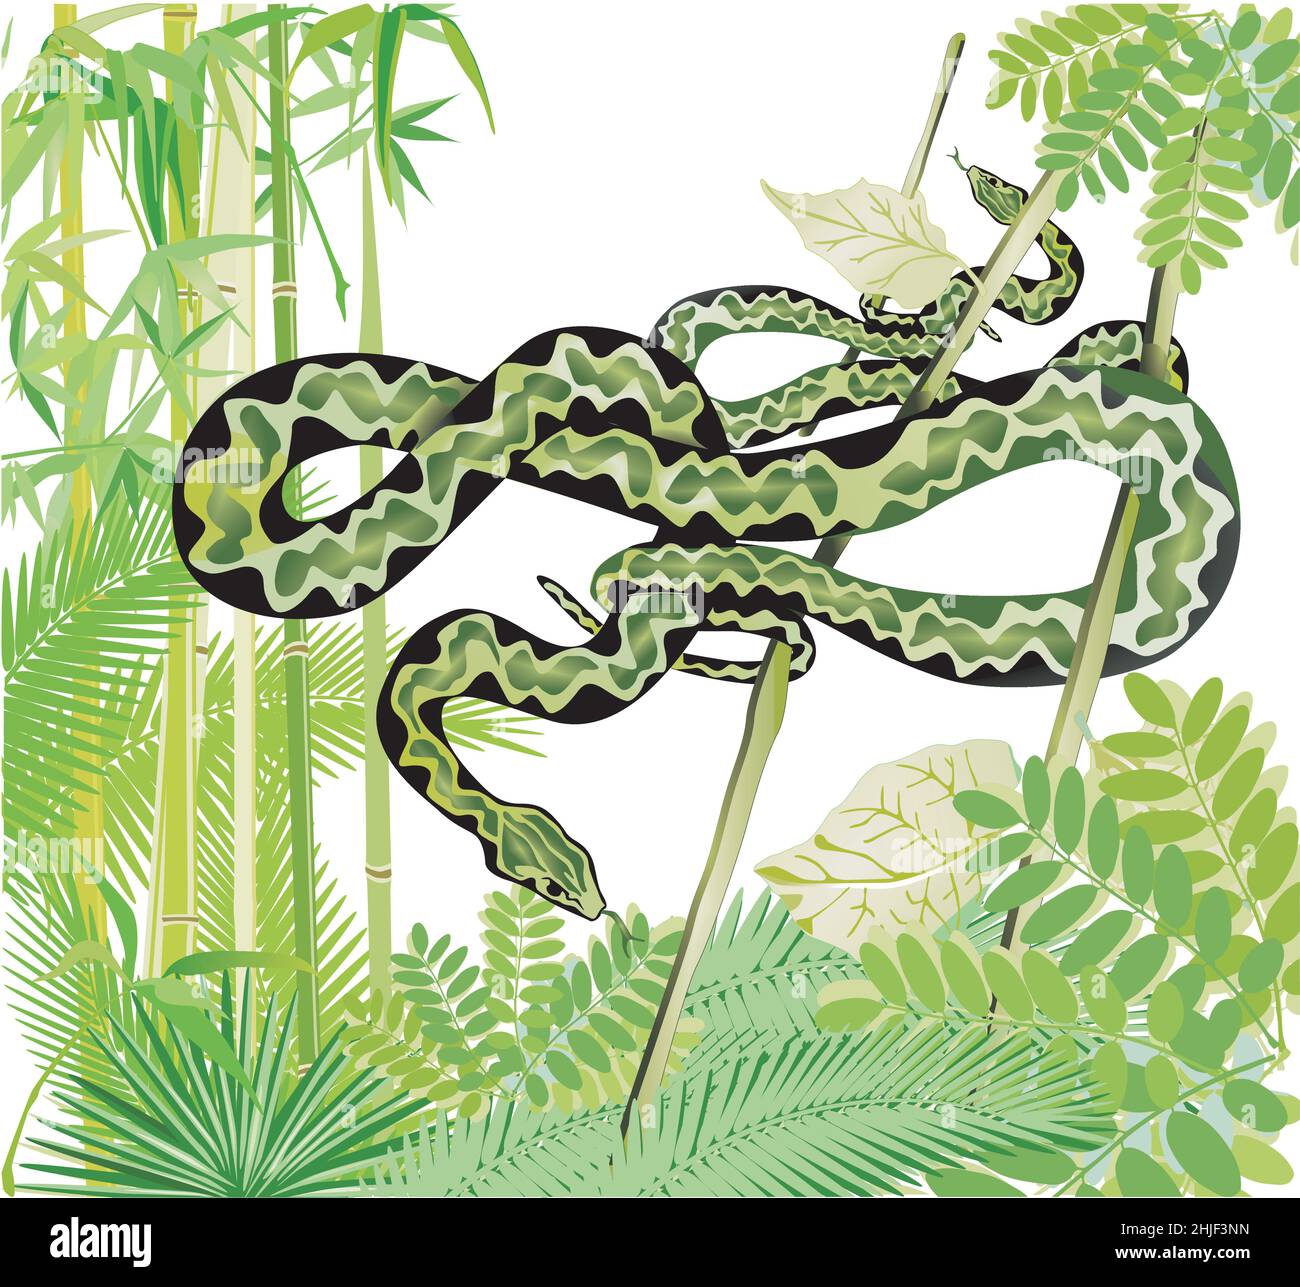 Dos serpientes en la selva, ilustración Ilustración del Vector